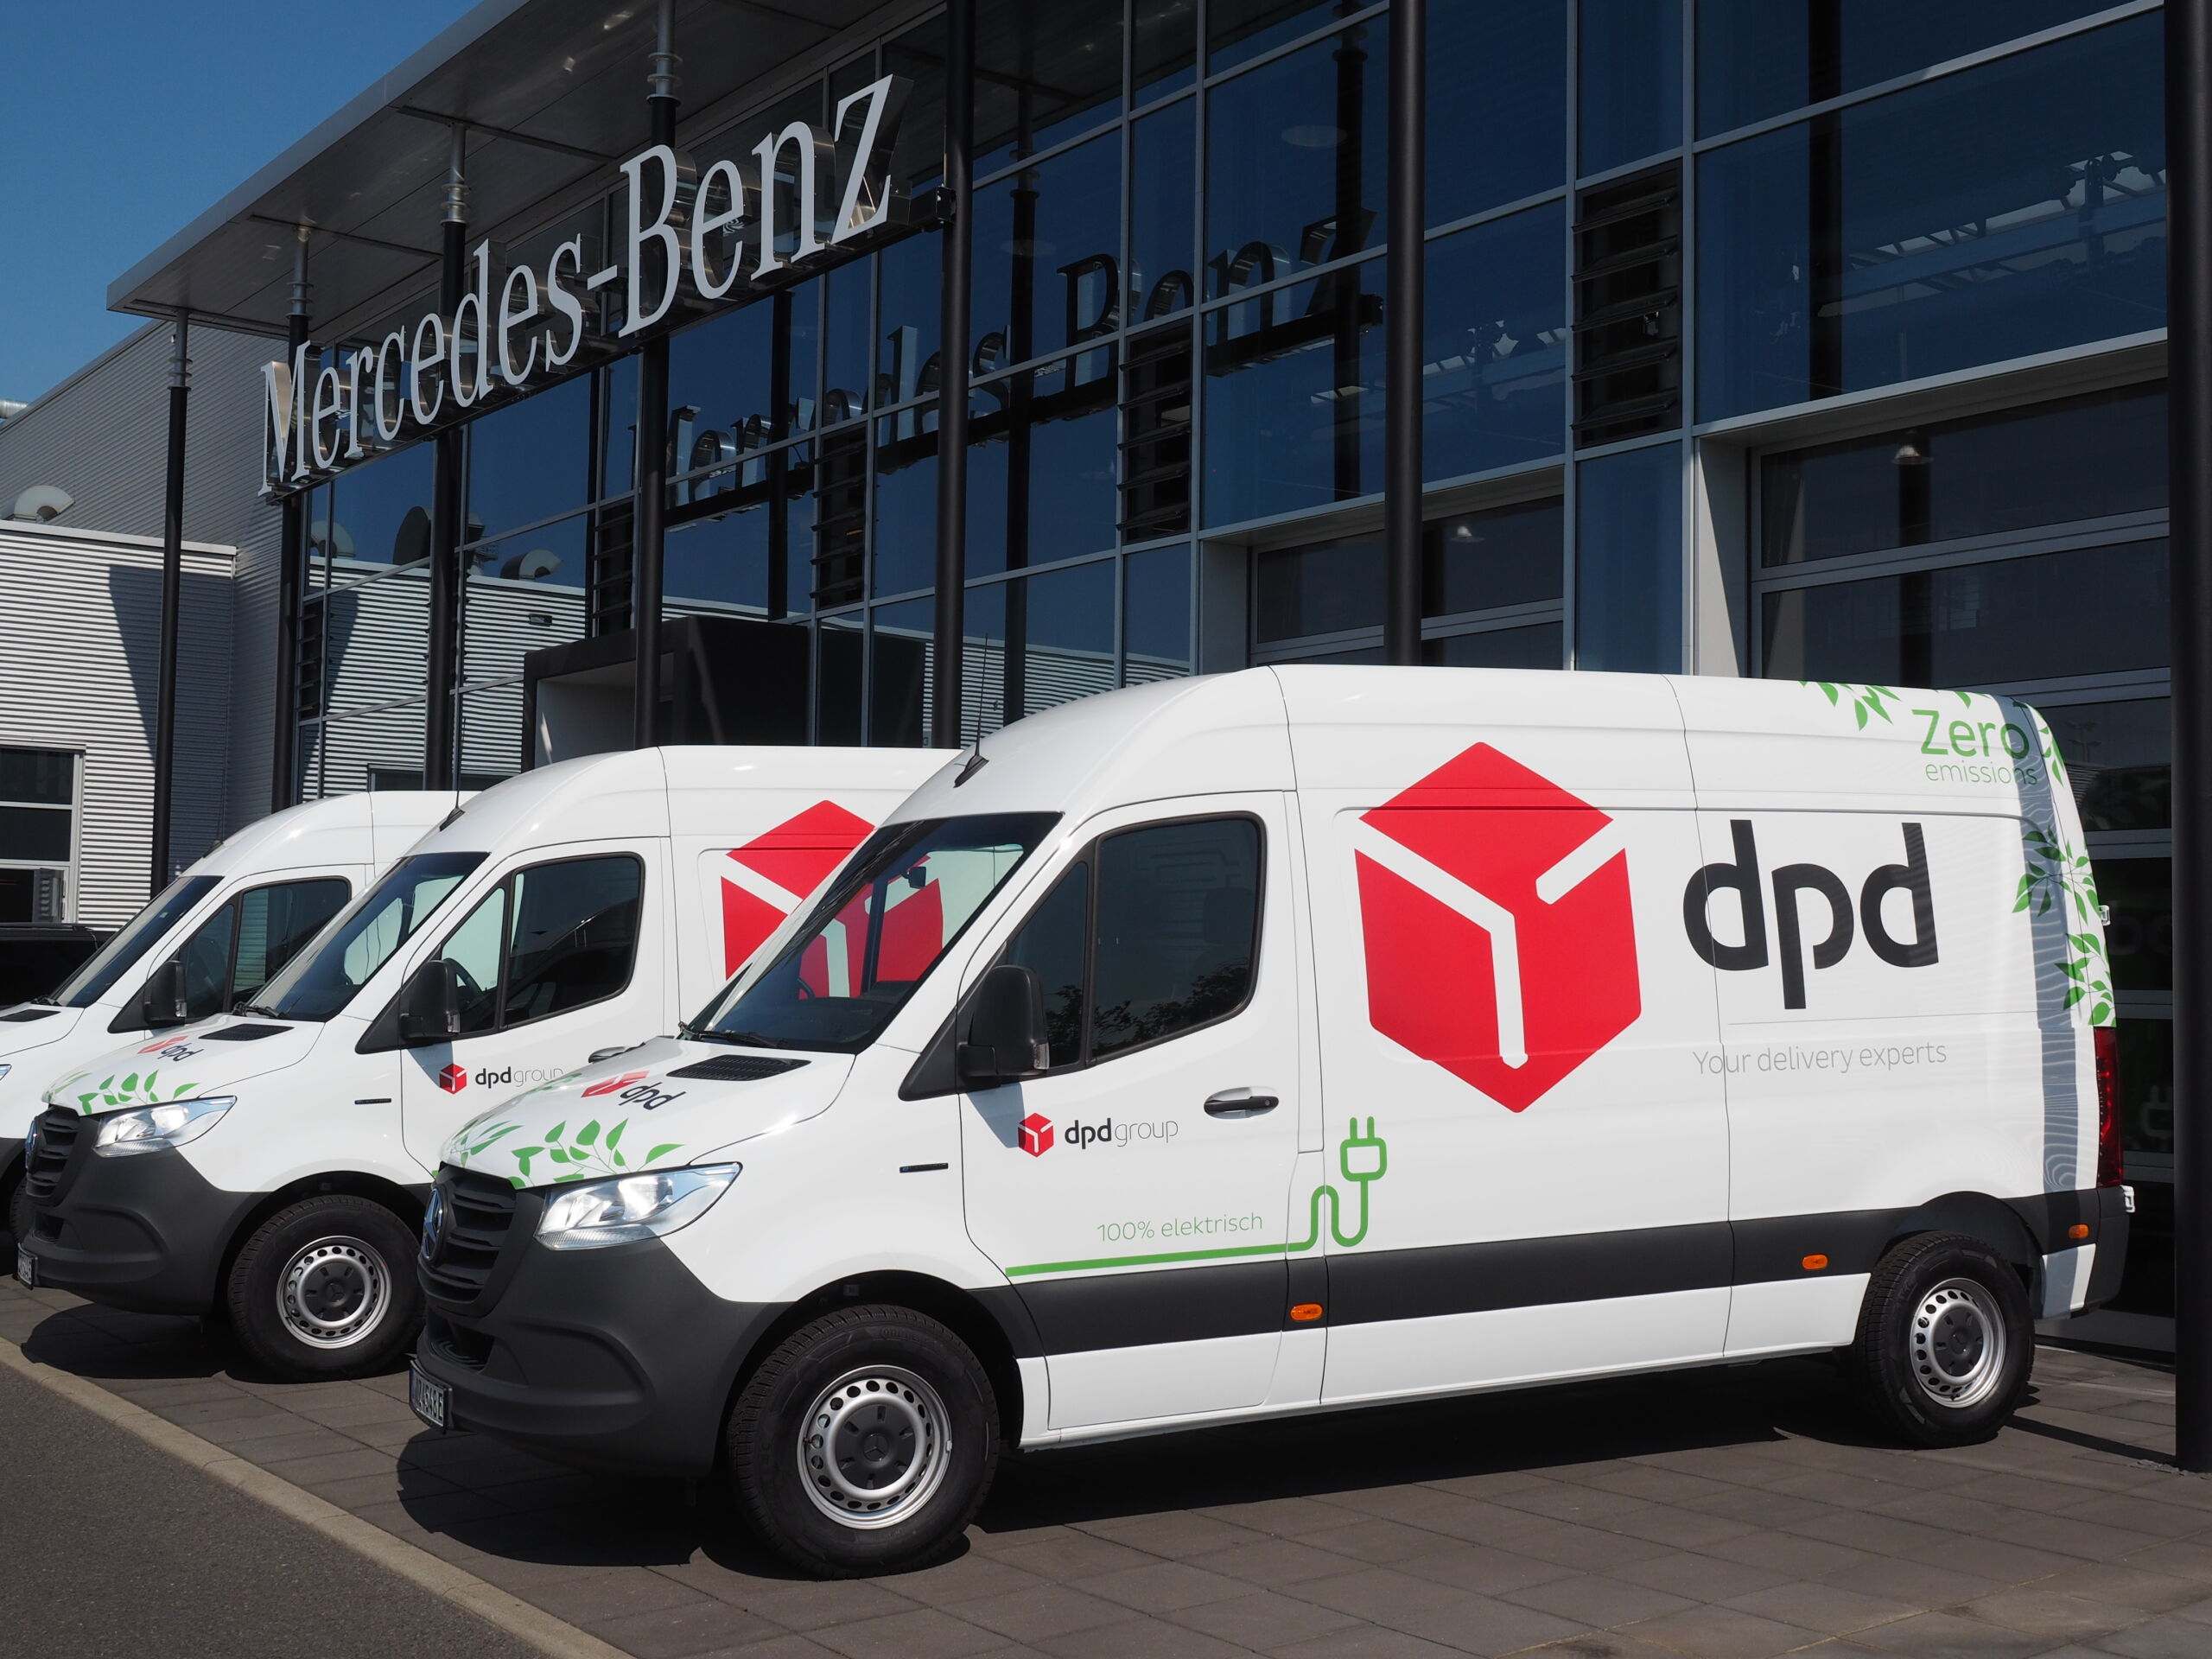 Lokal emissionsfrei unterwegs: Mercedes-Benz Vans übergibt erstmals eSprinter an DPD